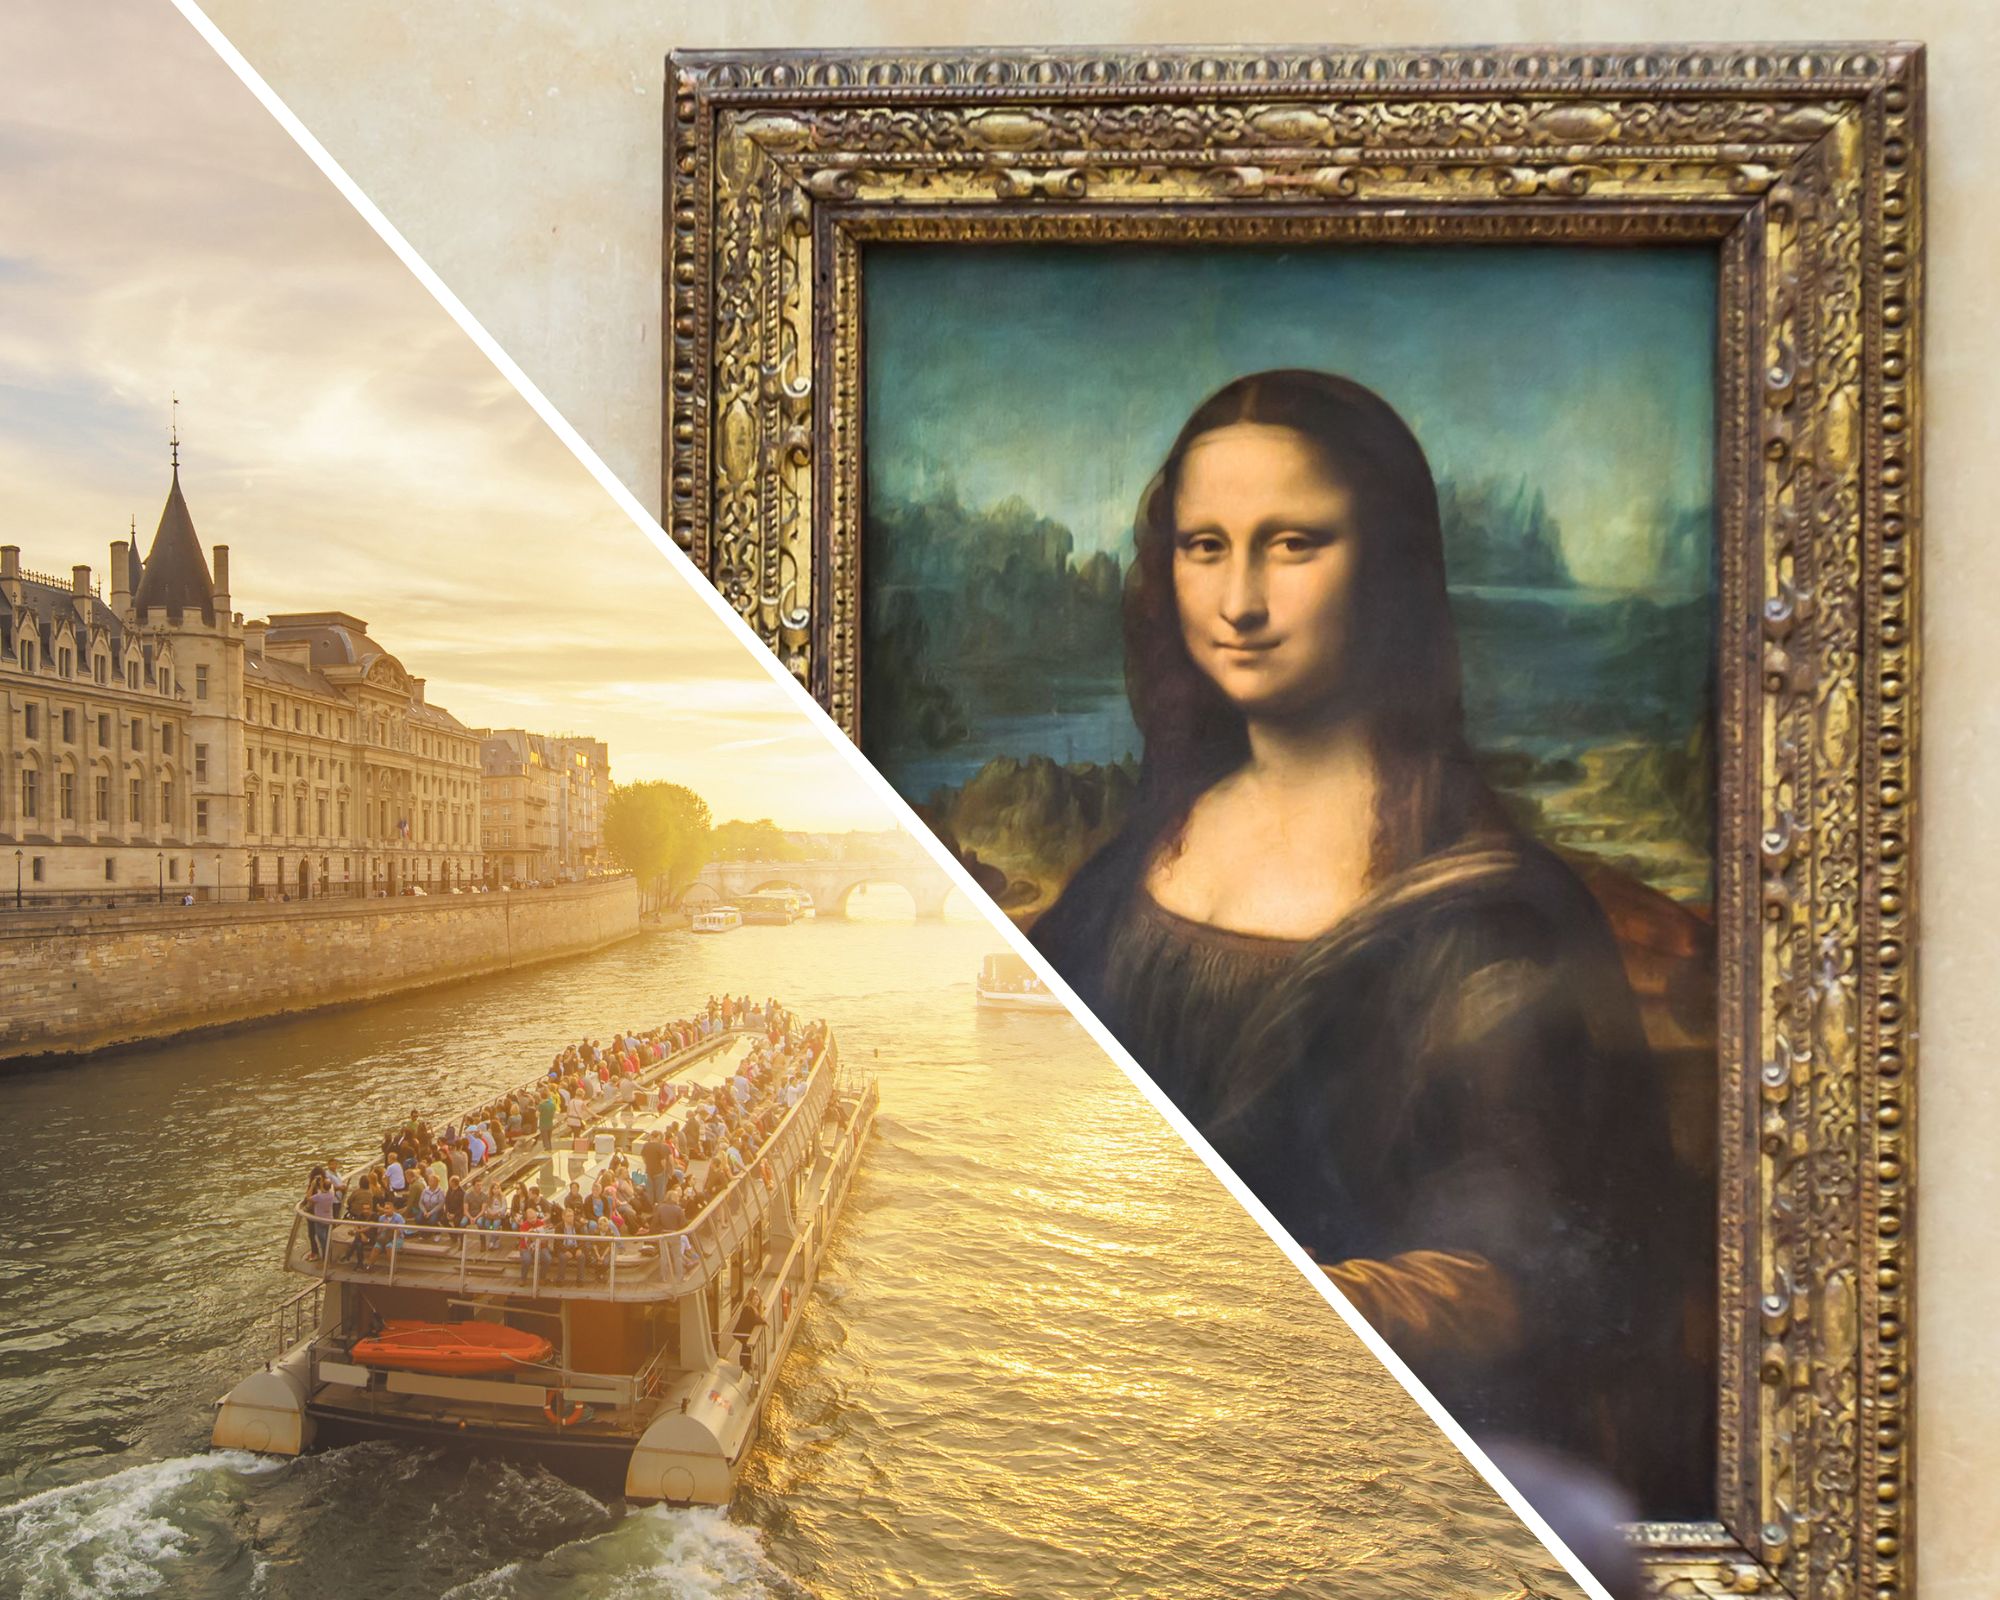 Visita ao Museu do Louvre e bilhete de cruzeiro no rio Sena, retirada da agência (com acesso reservado)